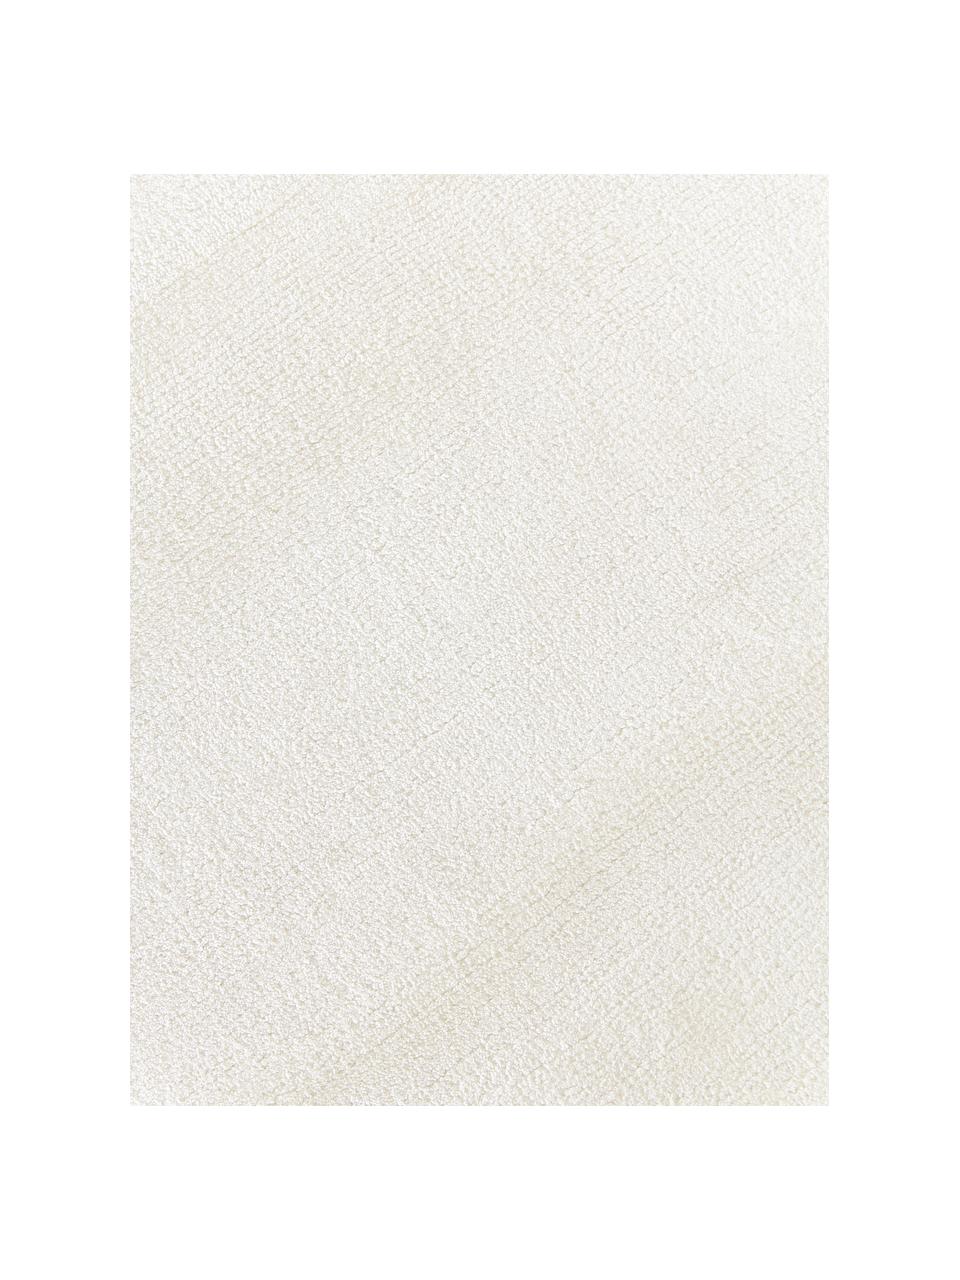 Handgewebter Viskoseteppich Wavy mit welligem Rand, Flor: 100 % Viskose, Beige, B 110 x L 180 cm (Grösse S)